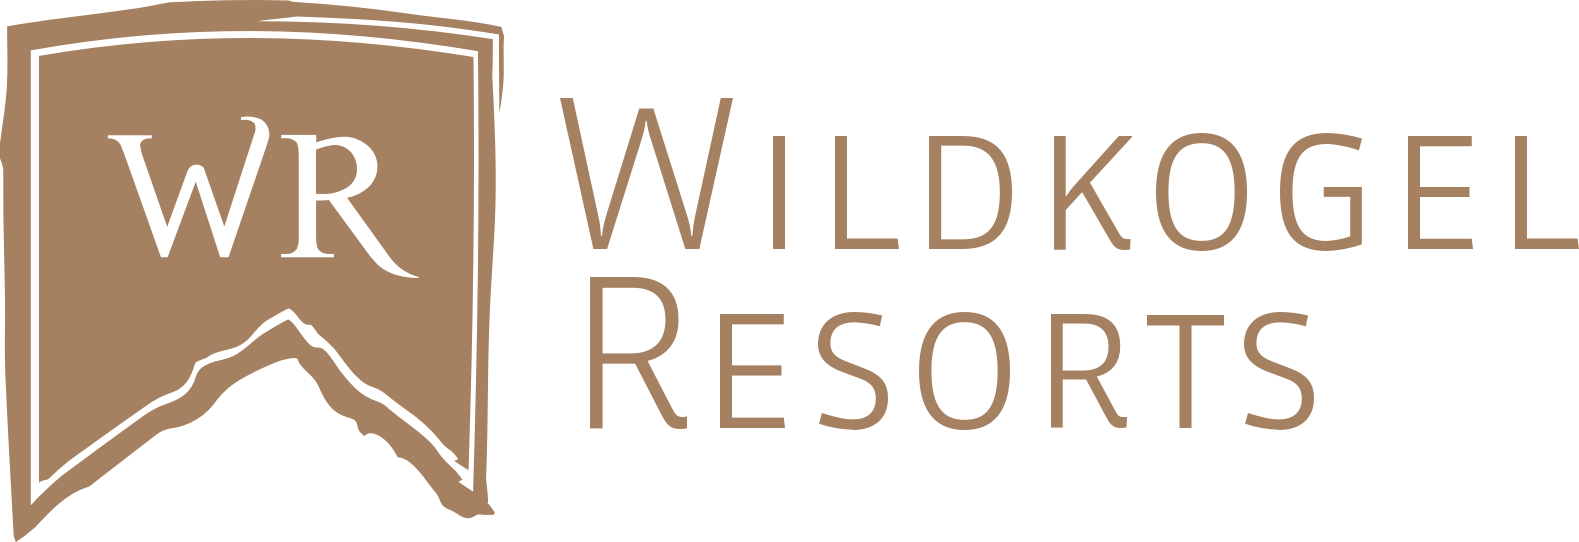 Wildkogel Logo